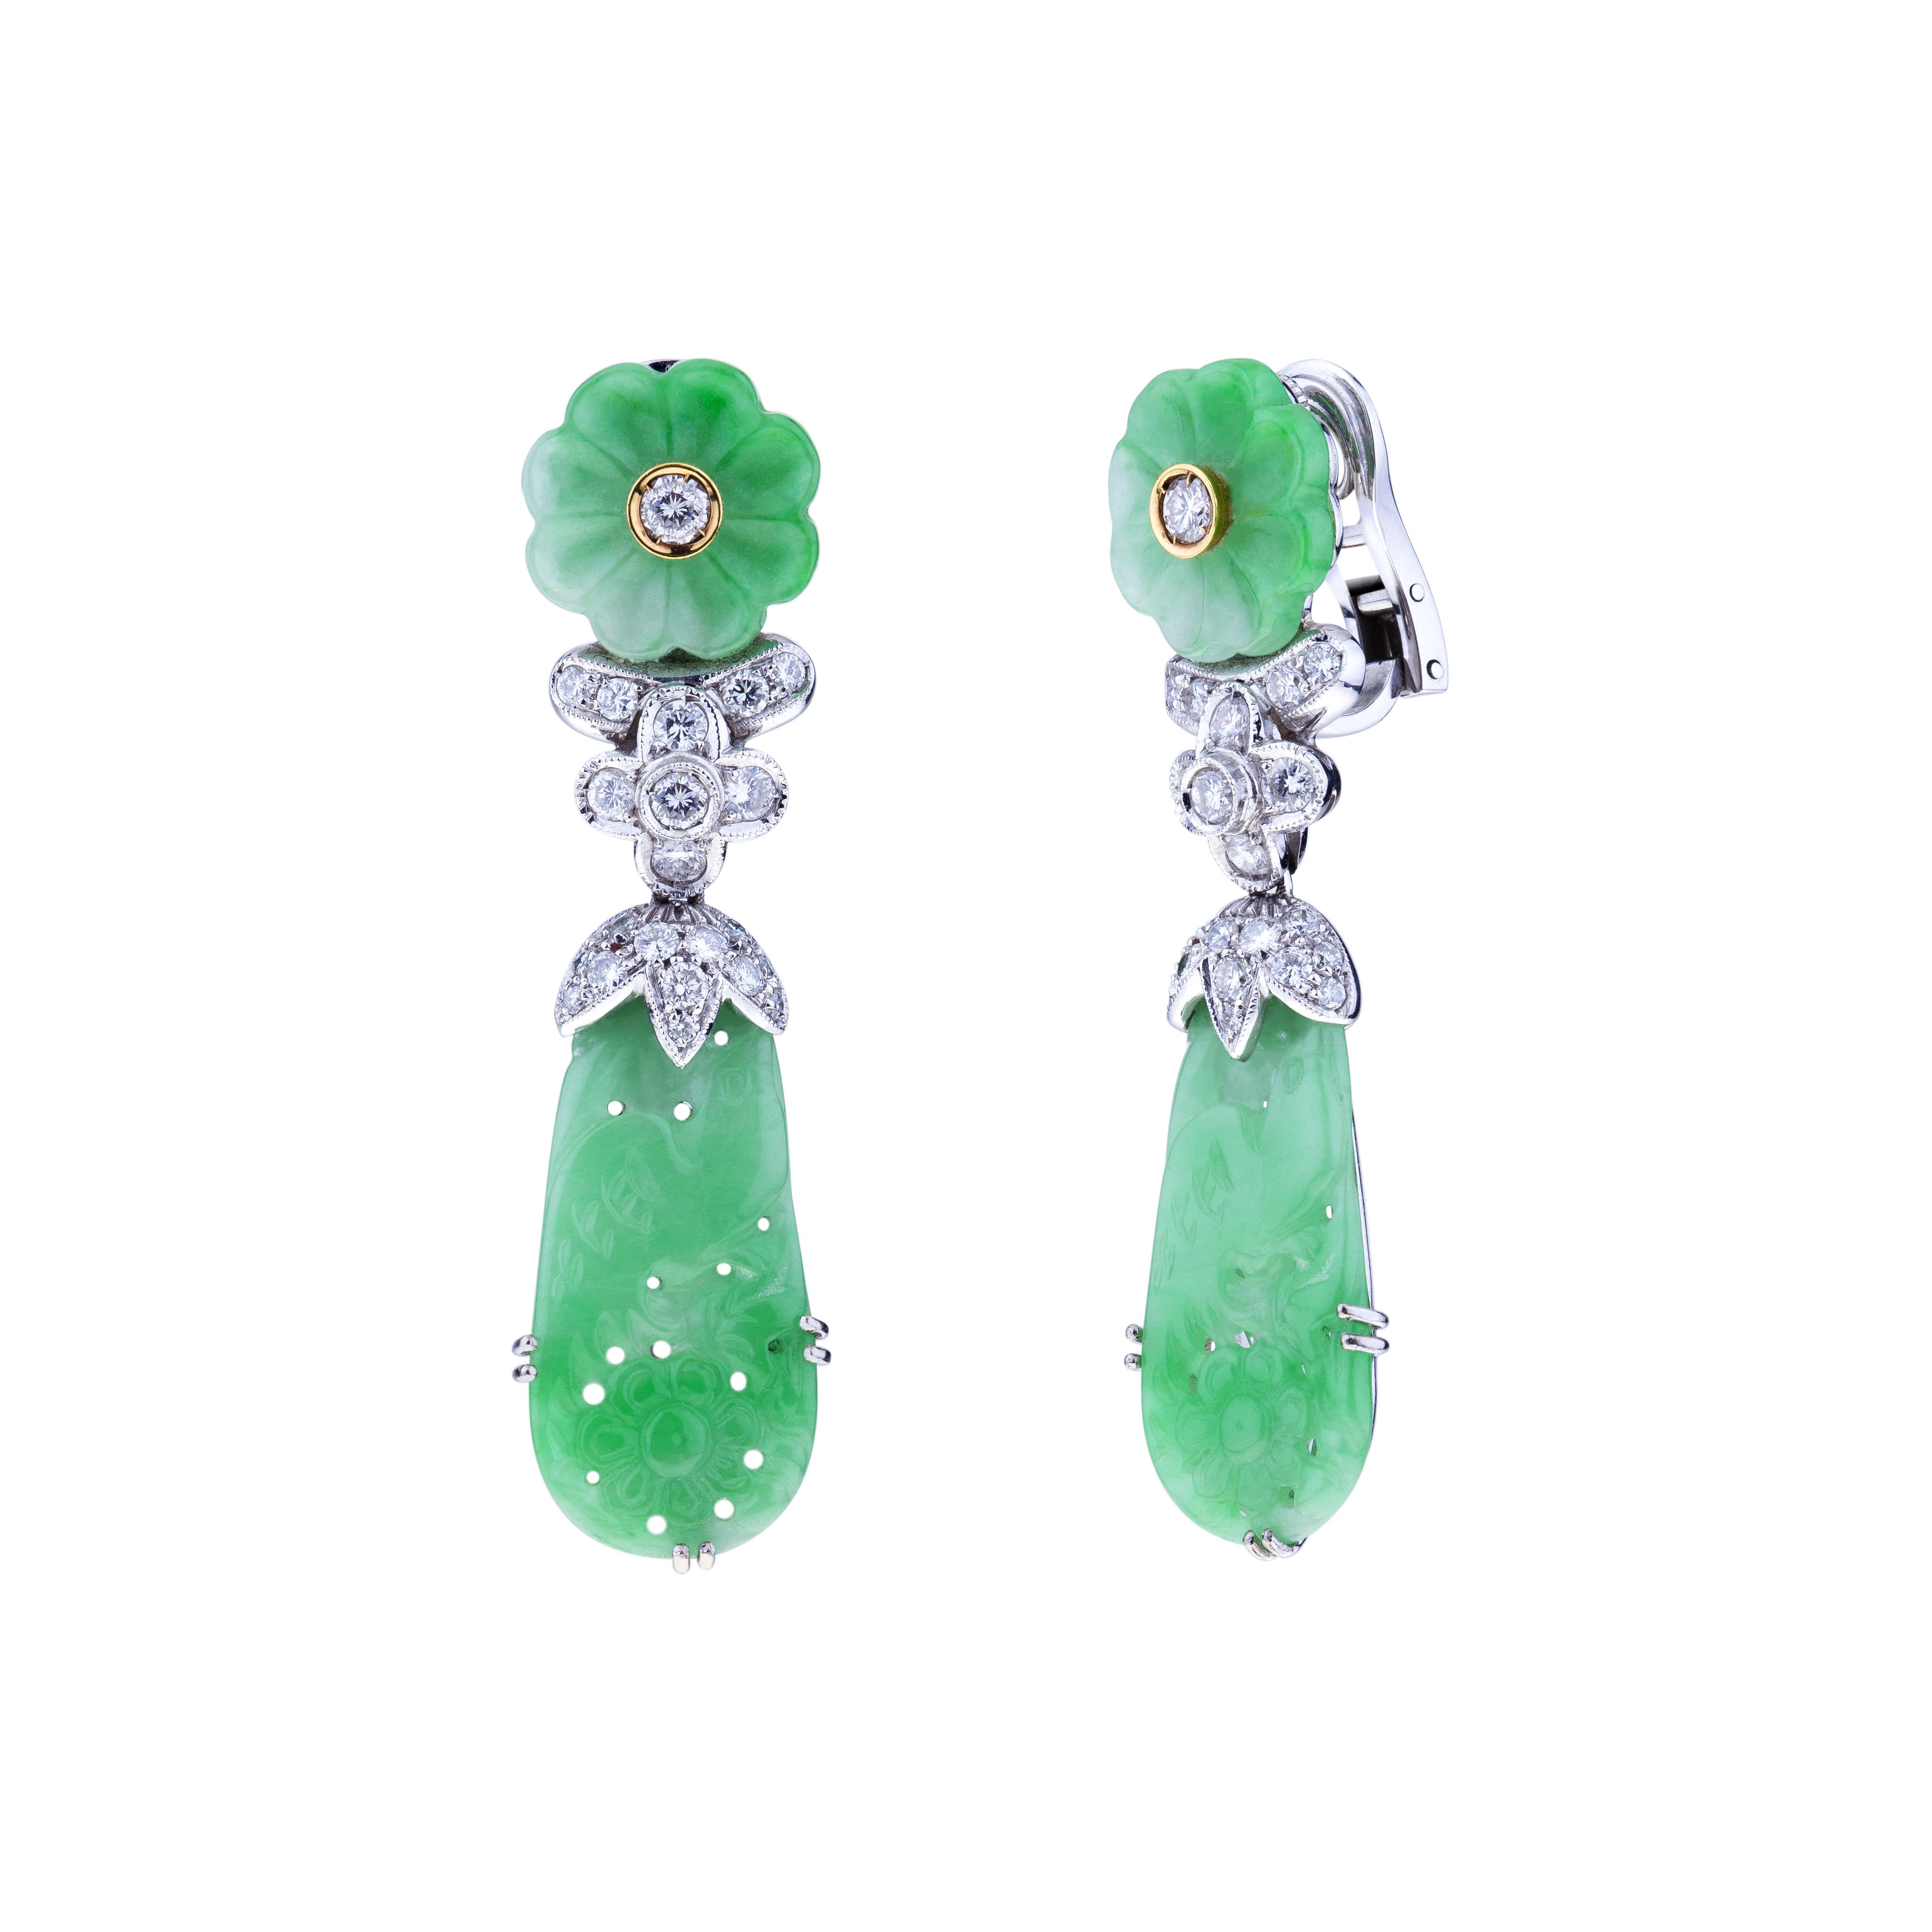 Hochwertige durchsichtige handgeschnitzte Jade-Ohrringe mit Diamanten.
Der Zauber der Jade dieser Ohrringe liegt darin, dass sie durchscheinend ist und dennoch zu den härtesten MATERIALEN der Natur gehört. Jade wird mit großen 